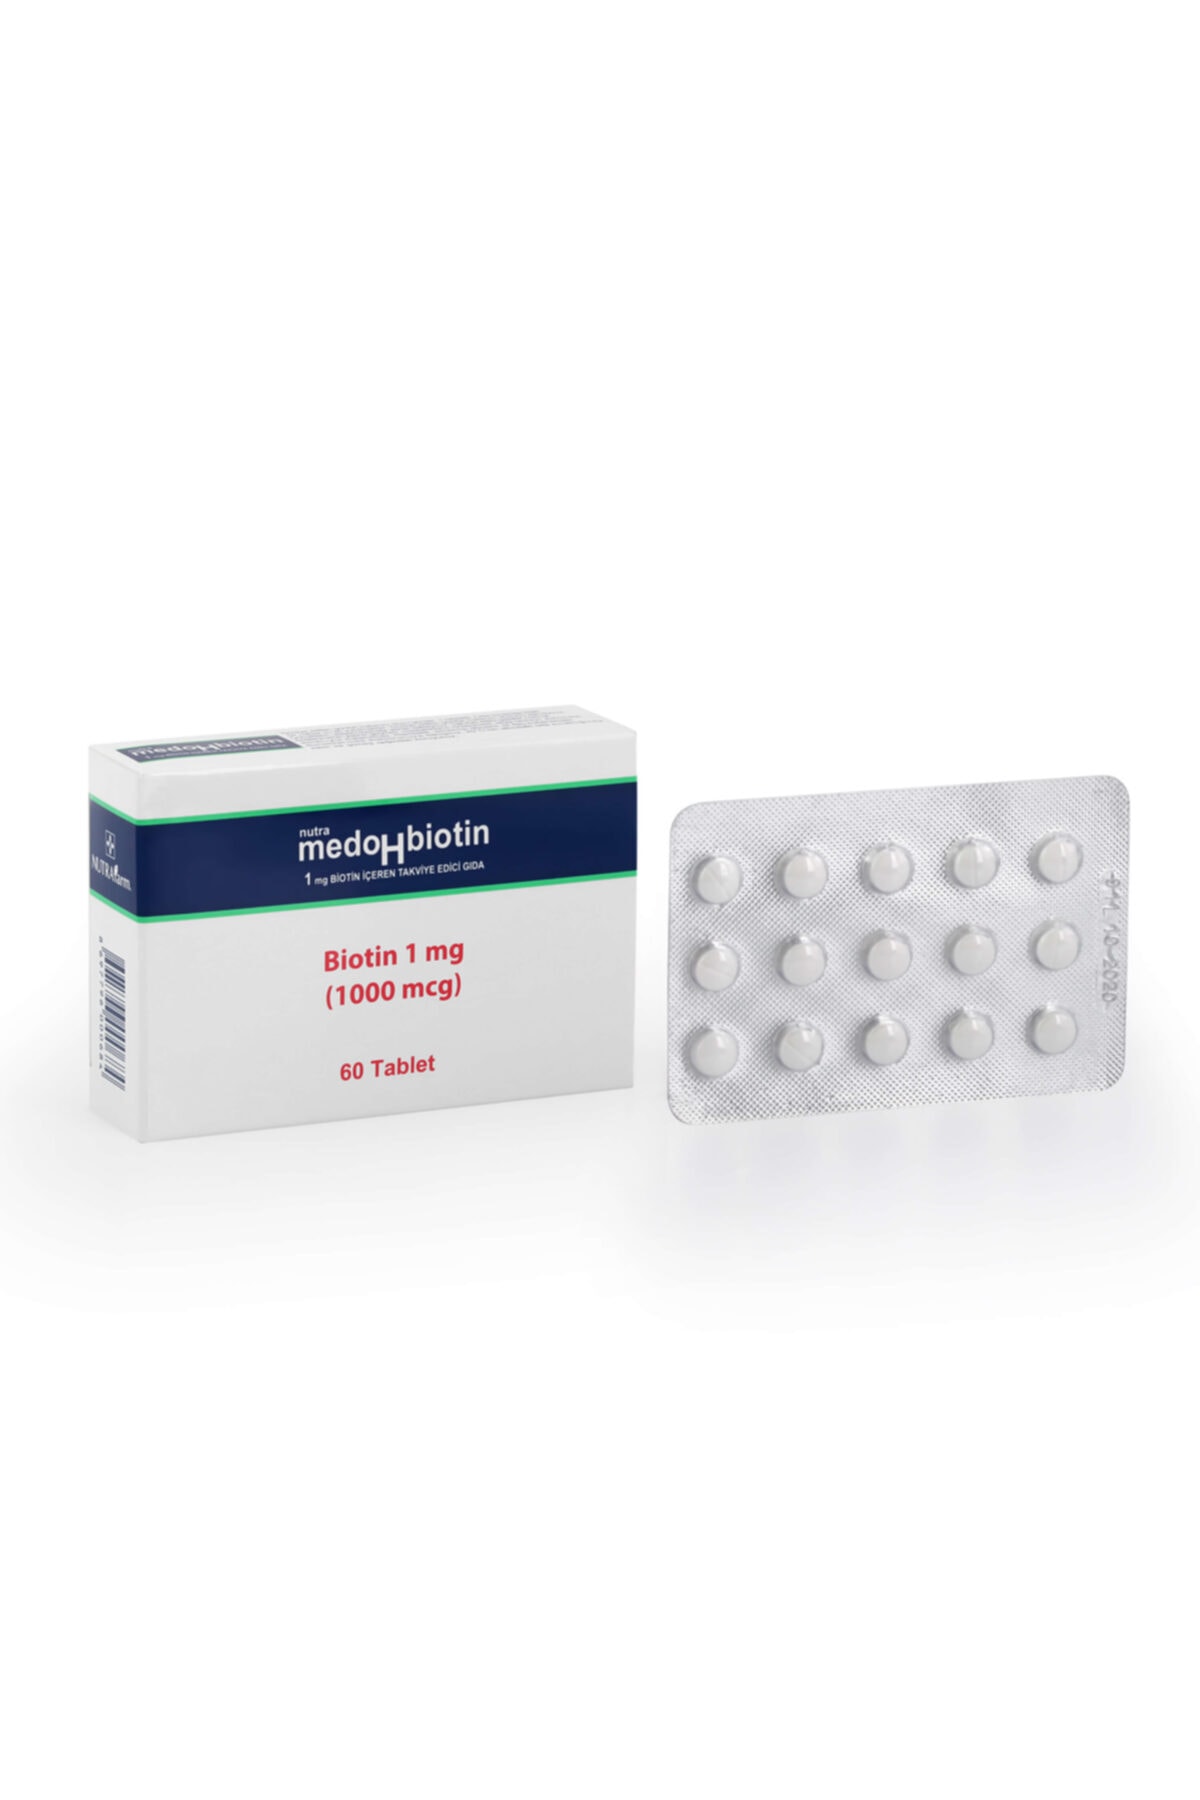 Dermoskin Medohbiotin 1 Mg 60 Tablet (Saç, Cilt ve Tırnak Güçlendirici Vitamin) Biotin Gıda Takviyesi